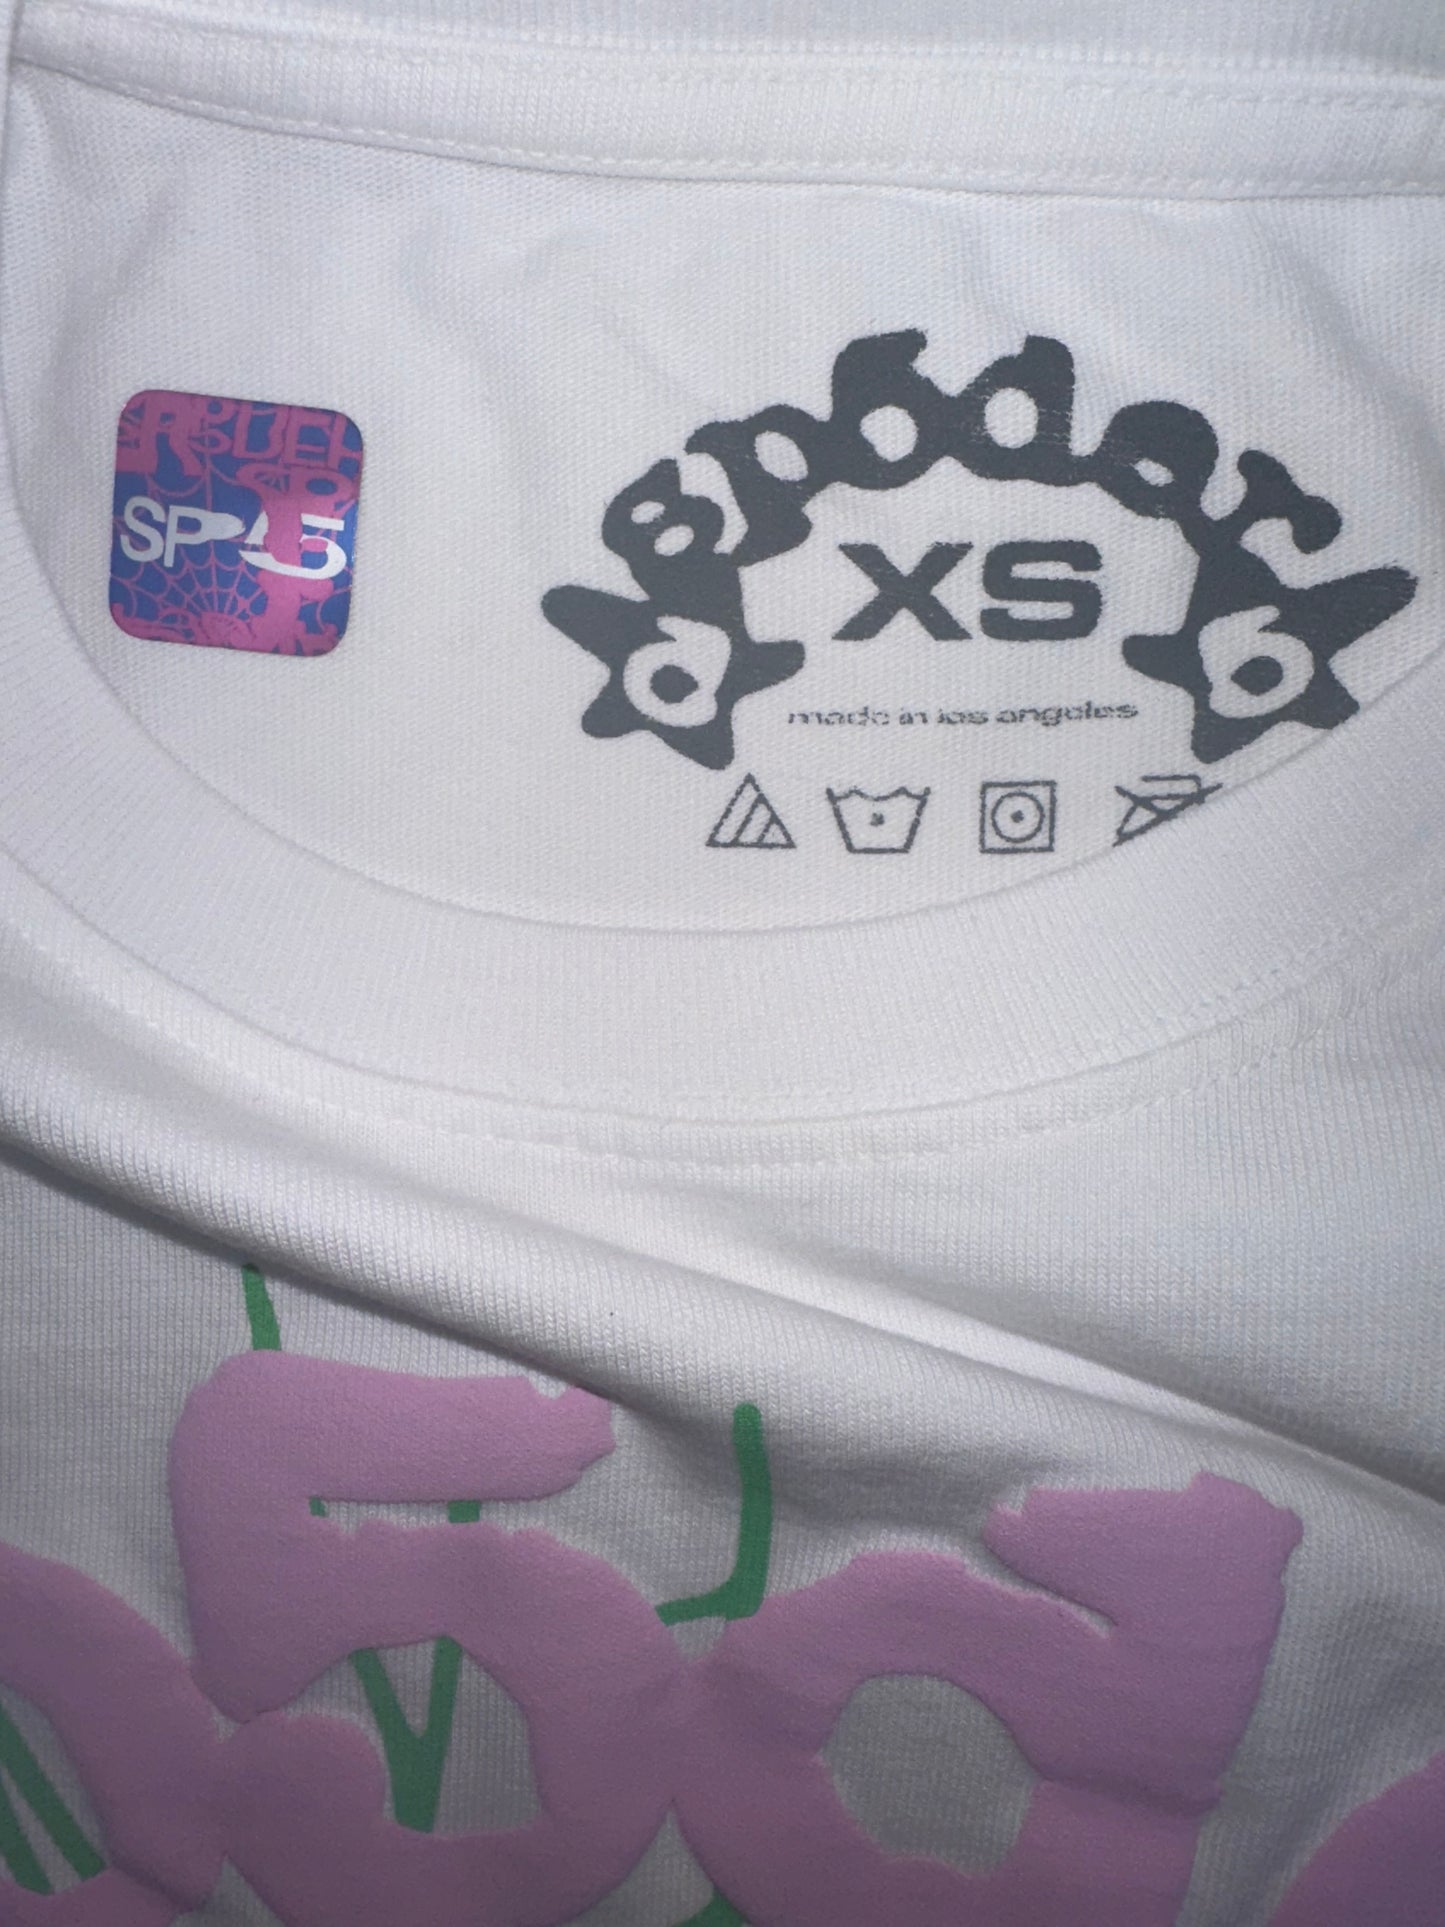 Sp5der OG Web T-shirt